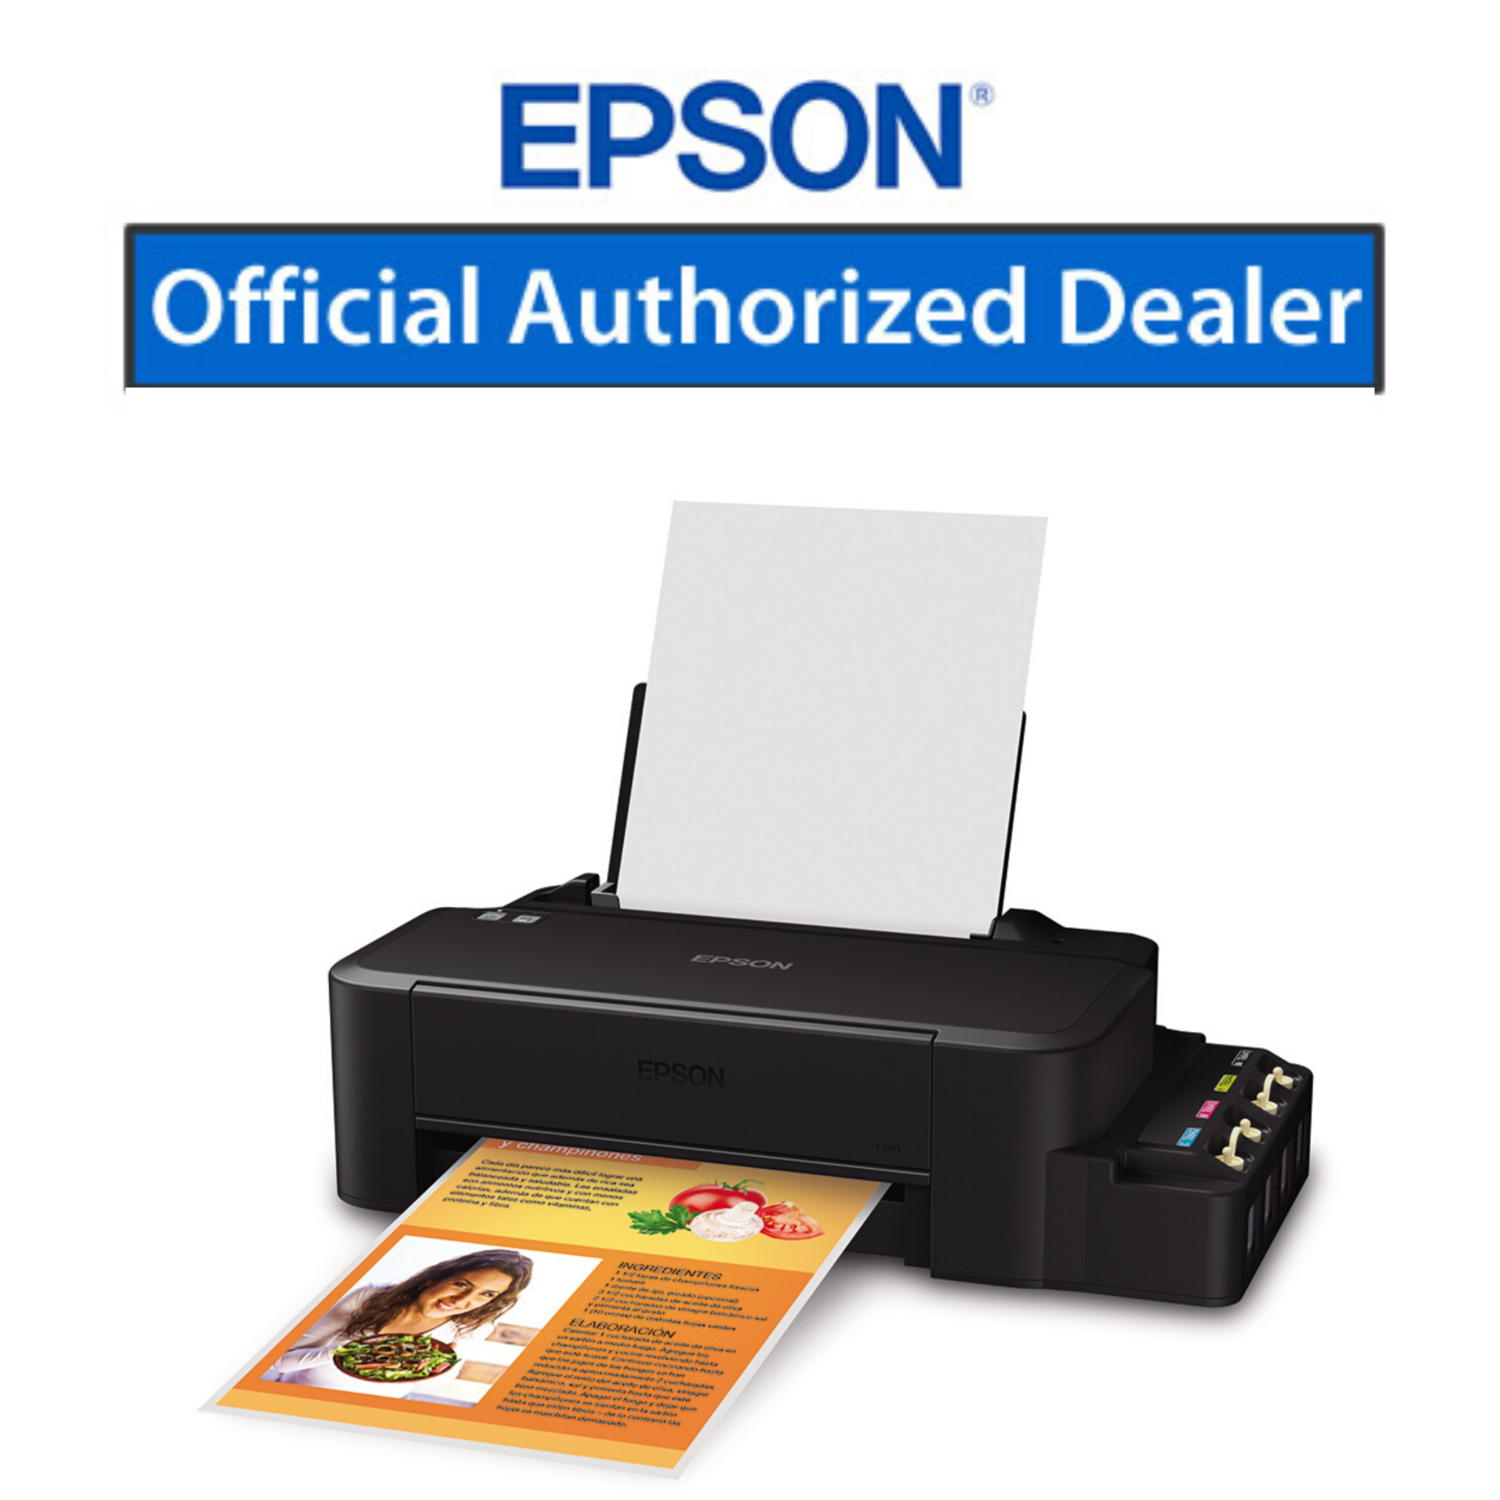 Купить принтер в оренбурге. Принтер Эпсон l120. Принтер Epson l121. Принтер Эпсон л 120. Принтер Epson ECOTANK l121.